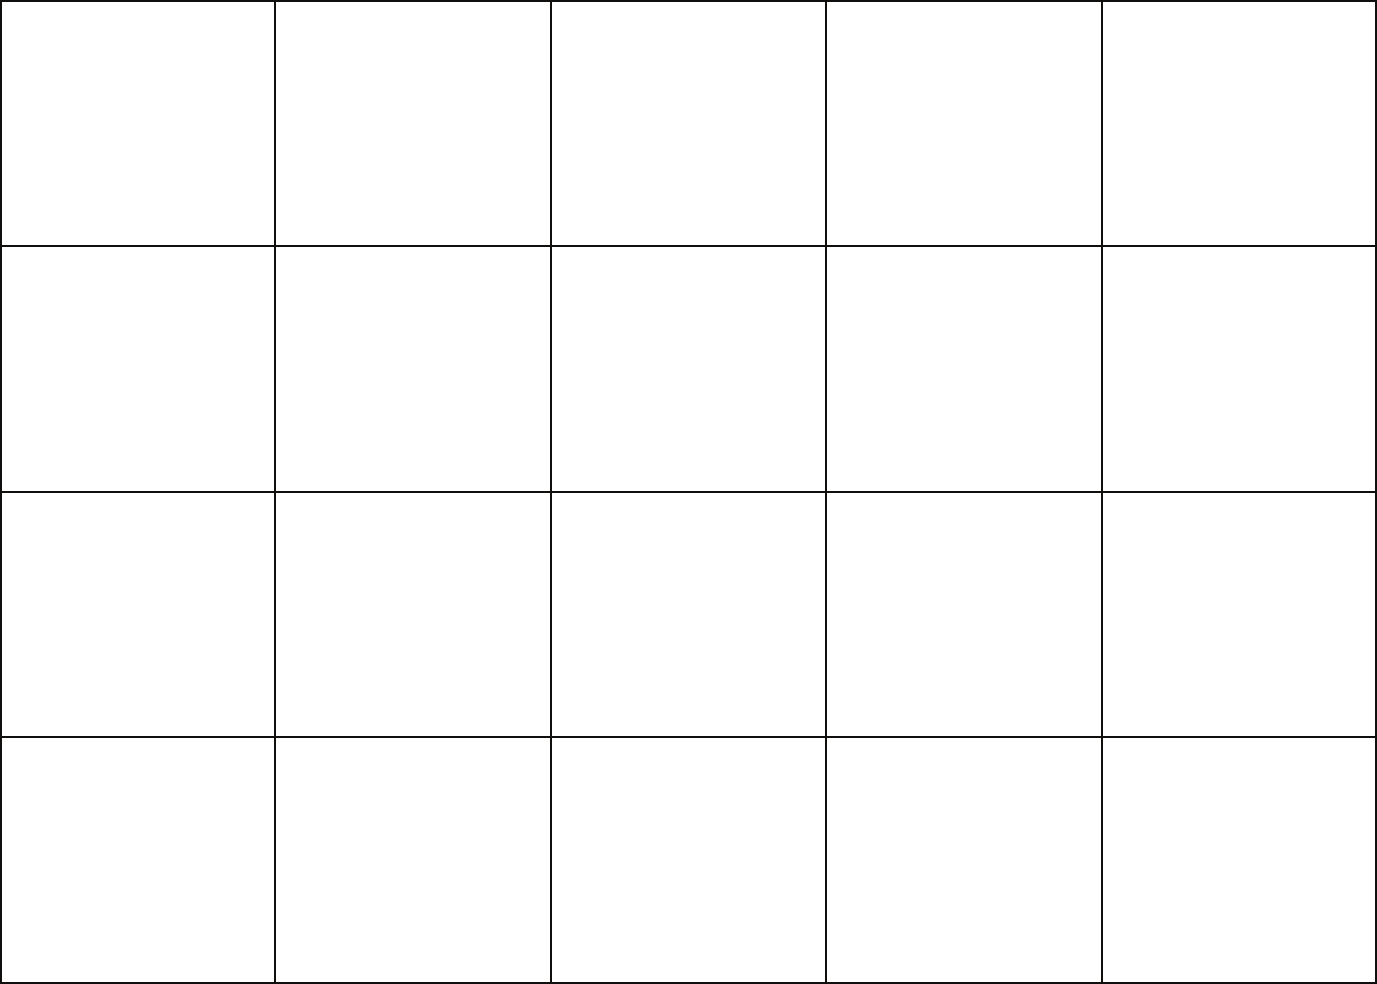 Ответы листы бумаги 2 по 5. Лист поделенный на квадратики. Лист расчерченный на квадраты. Таблица с пустыми ячейками. Квадраты на листе а4.